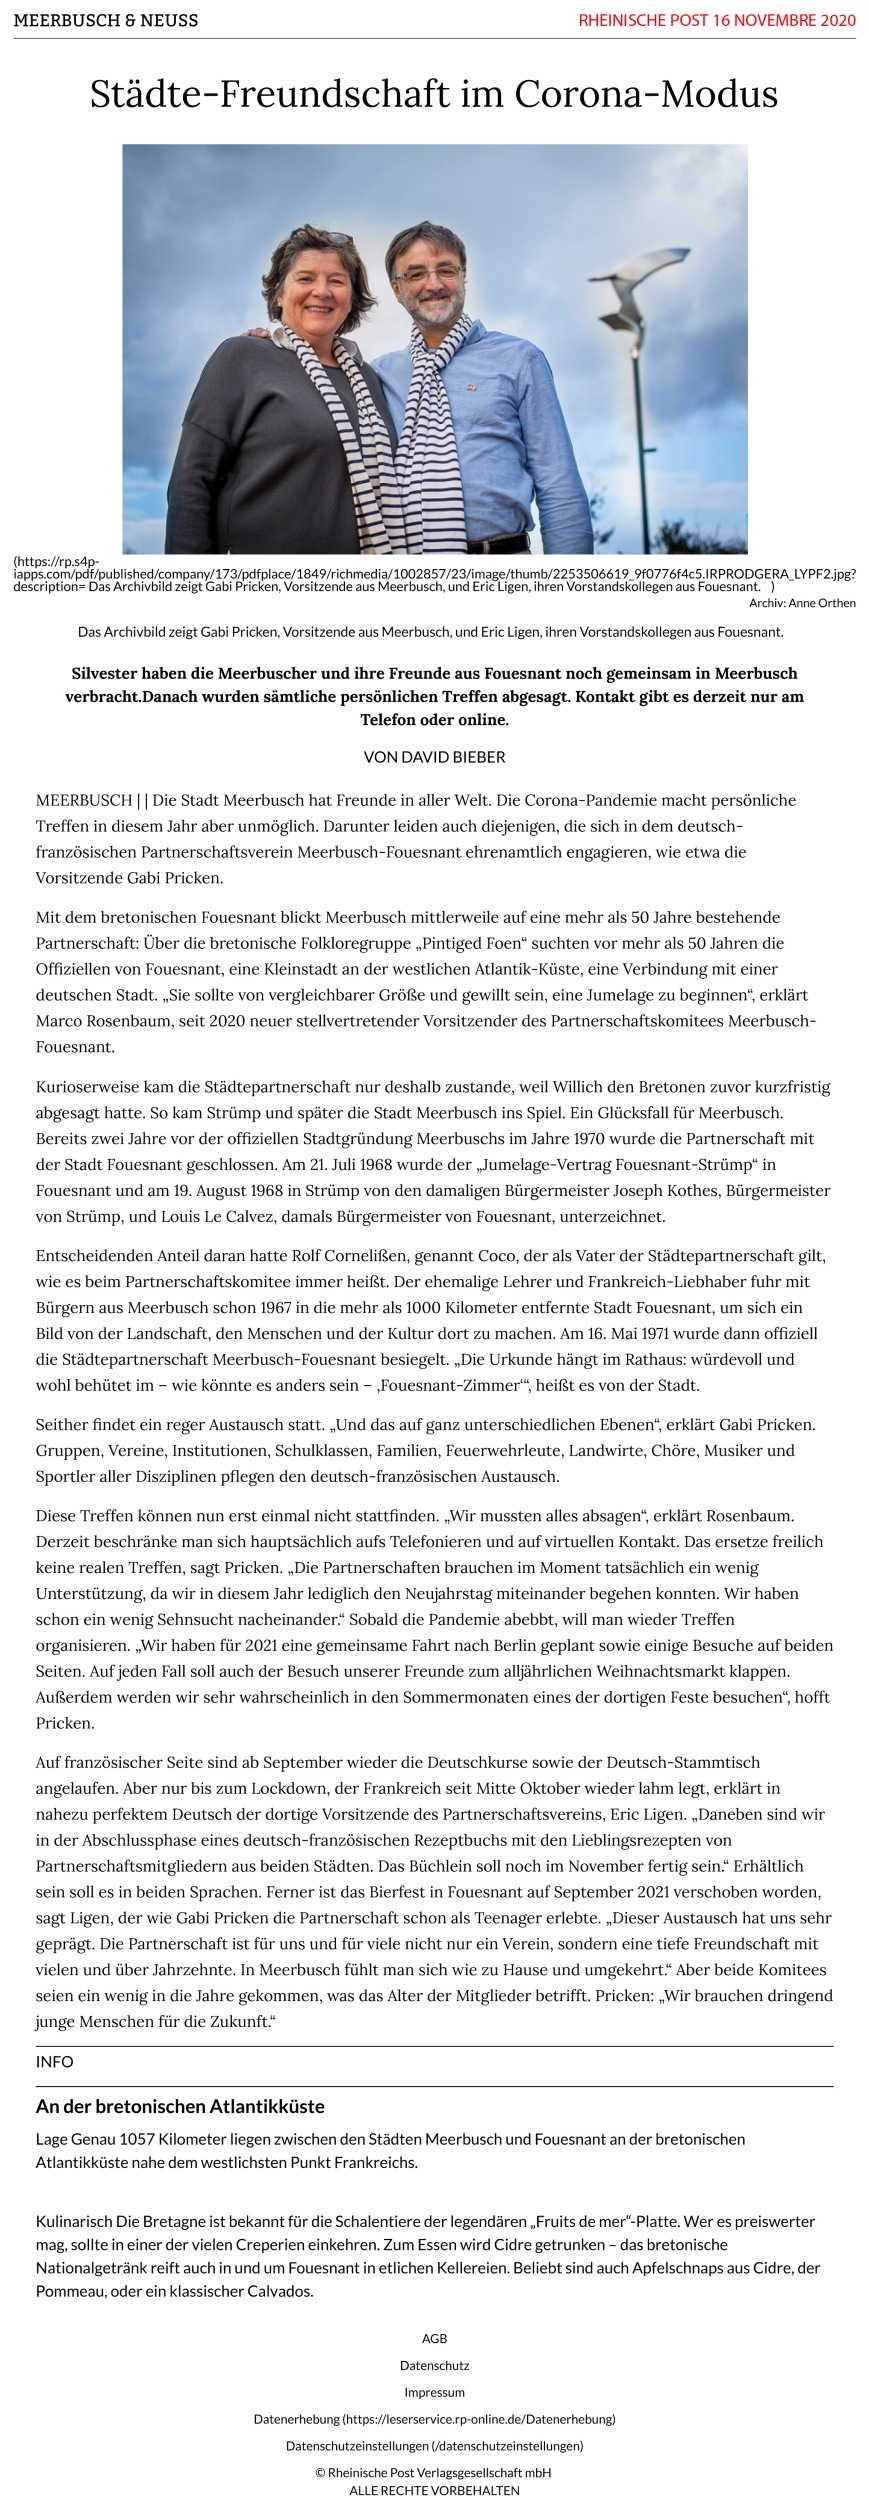 Rheinische Post, 16 novembre 2020